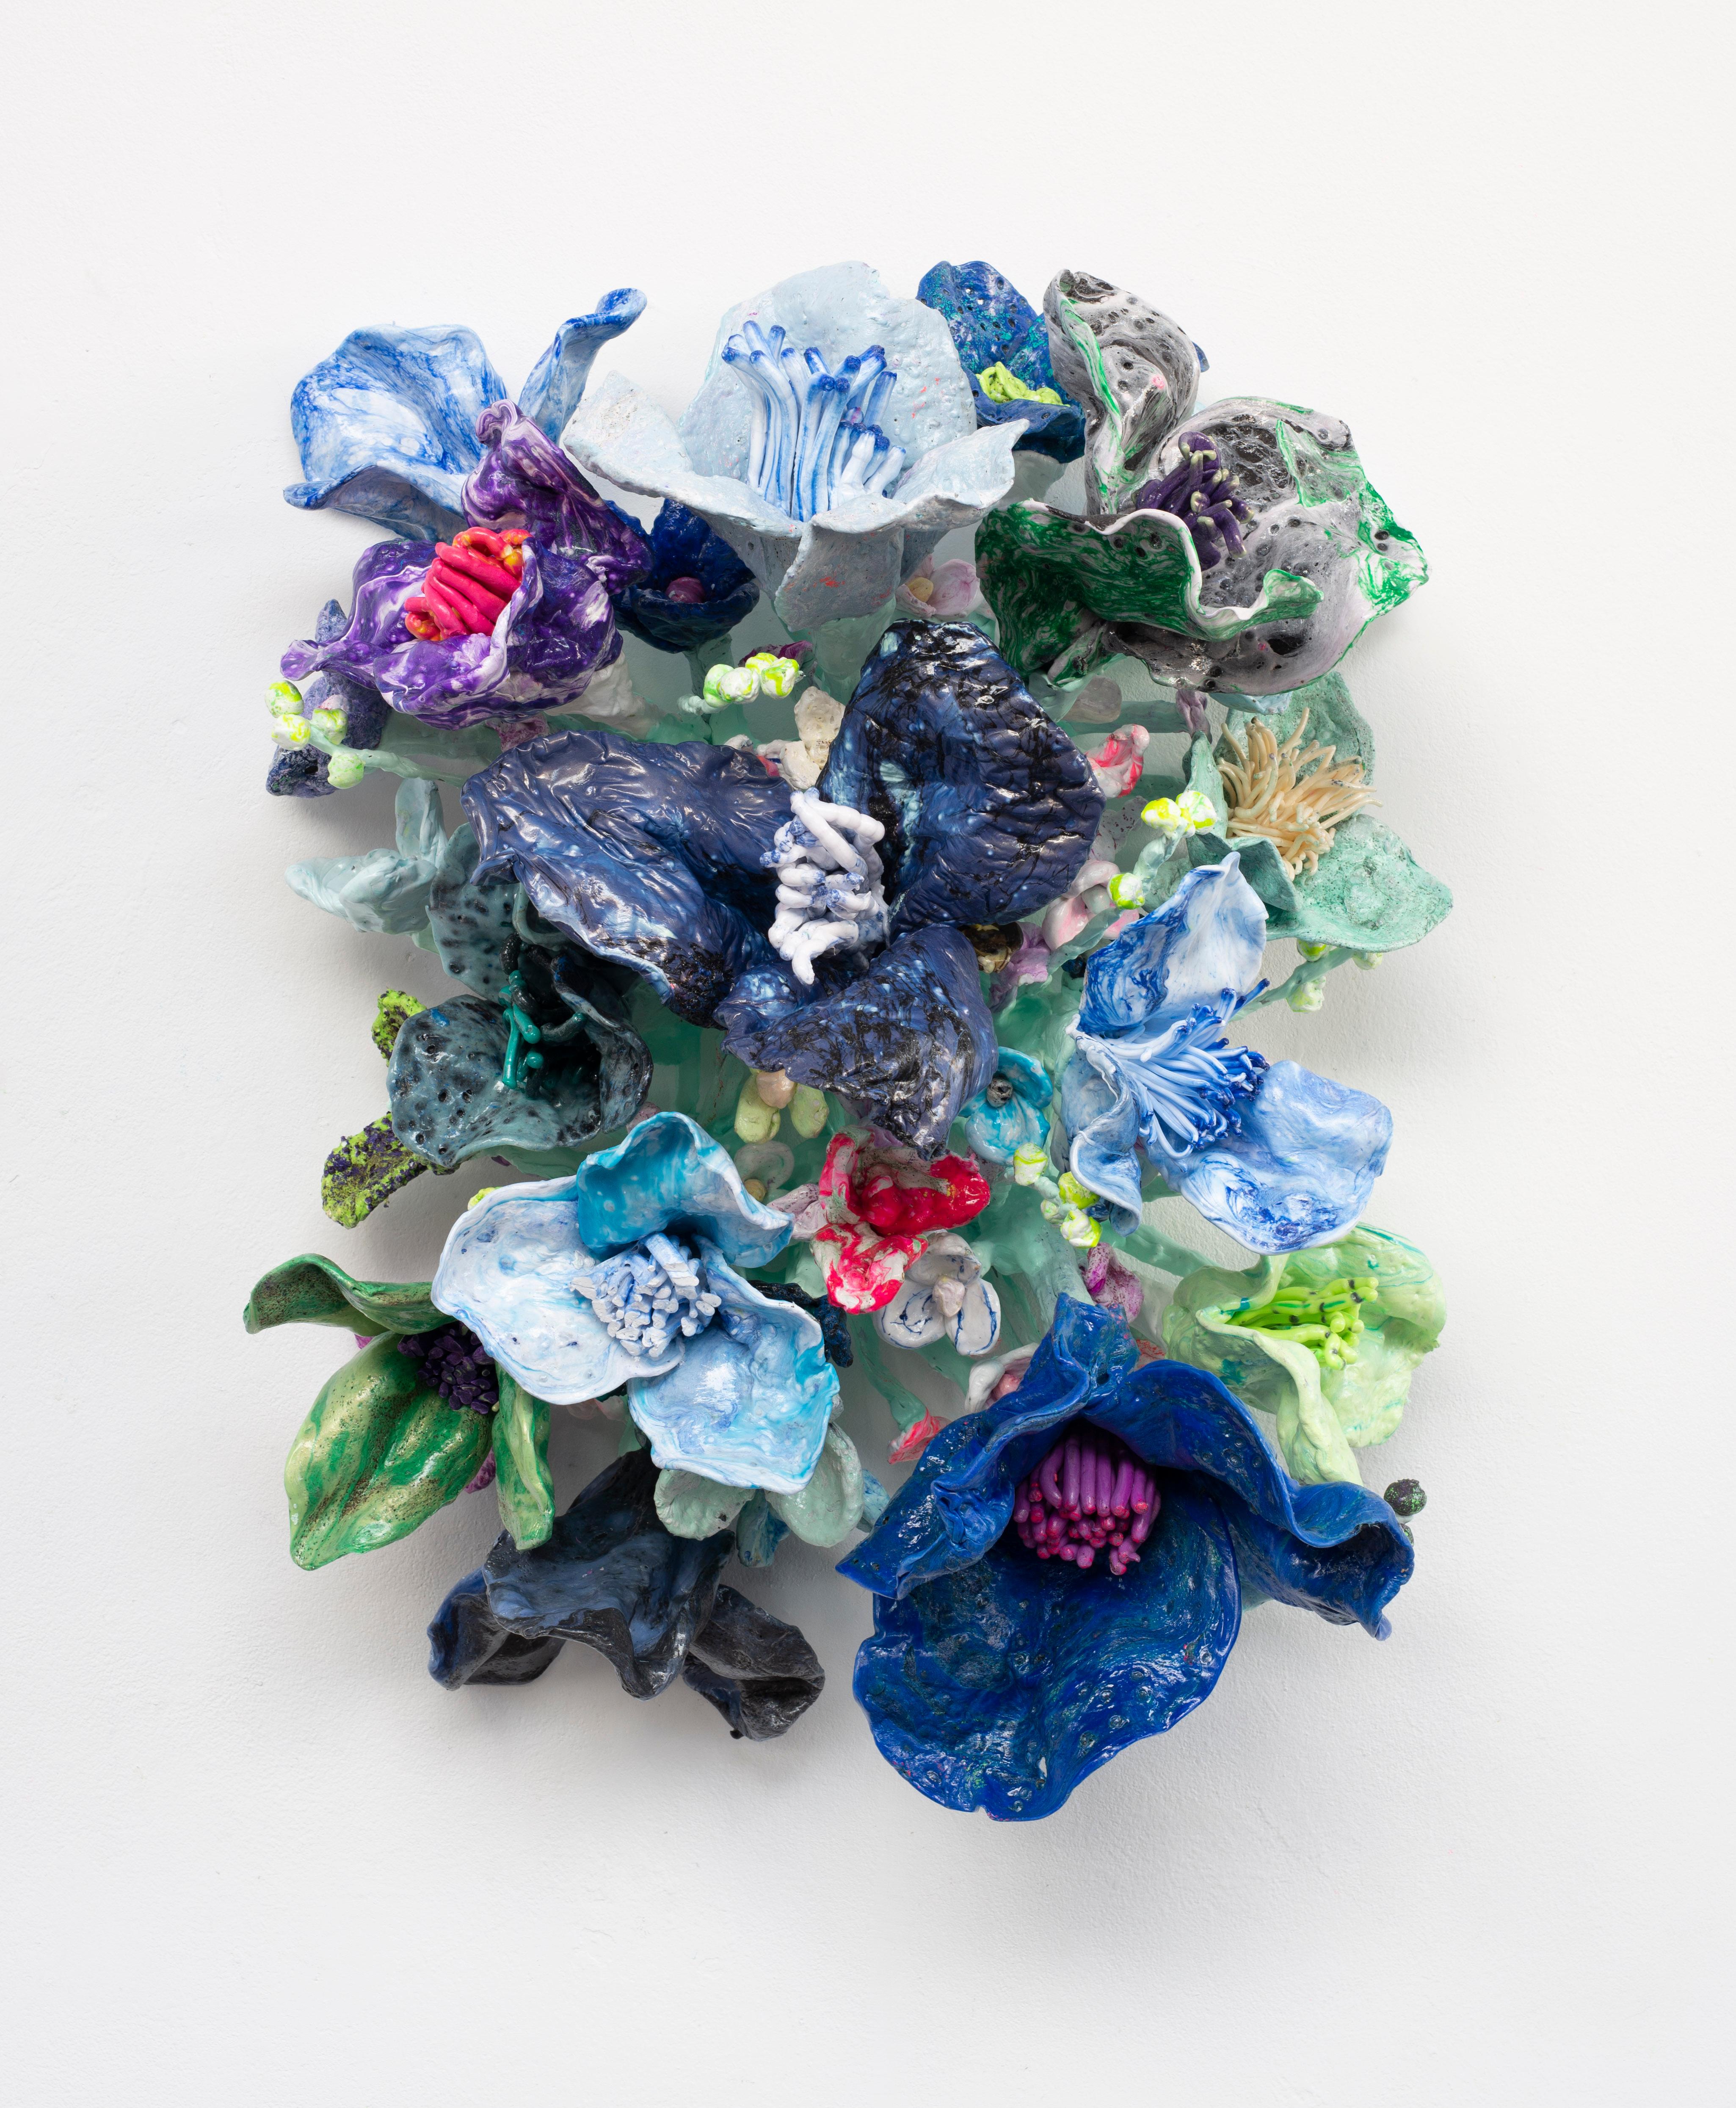 Flower Bonanza blue and mint - Mixed Media Art by Stefan Gross